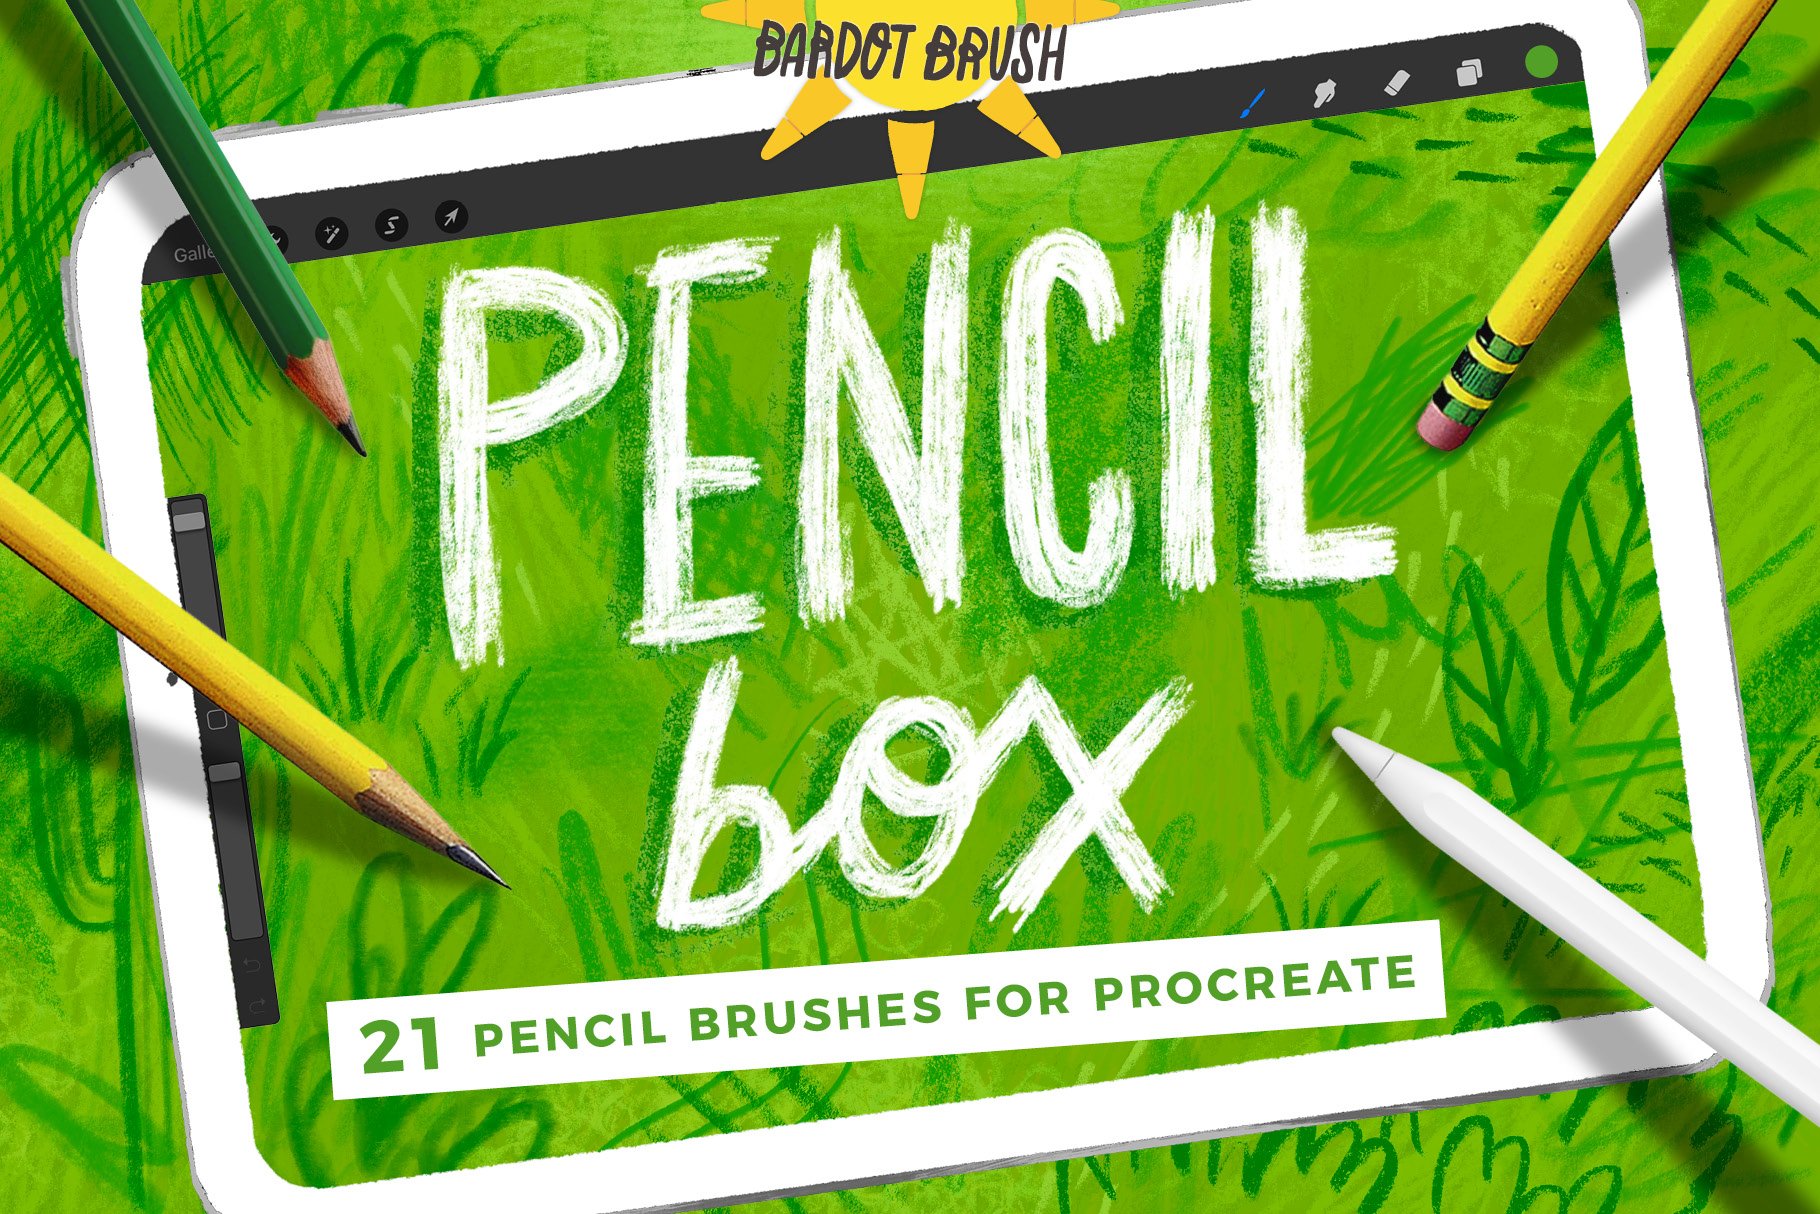 Pencil Box for Procreate cover image.